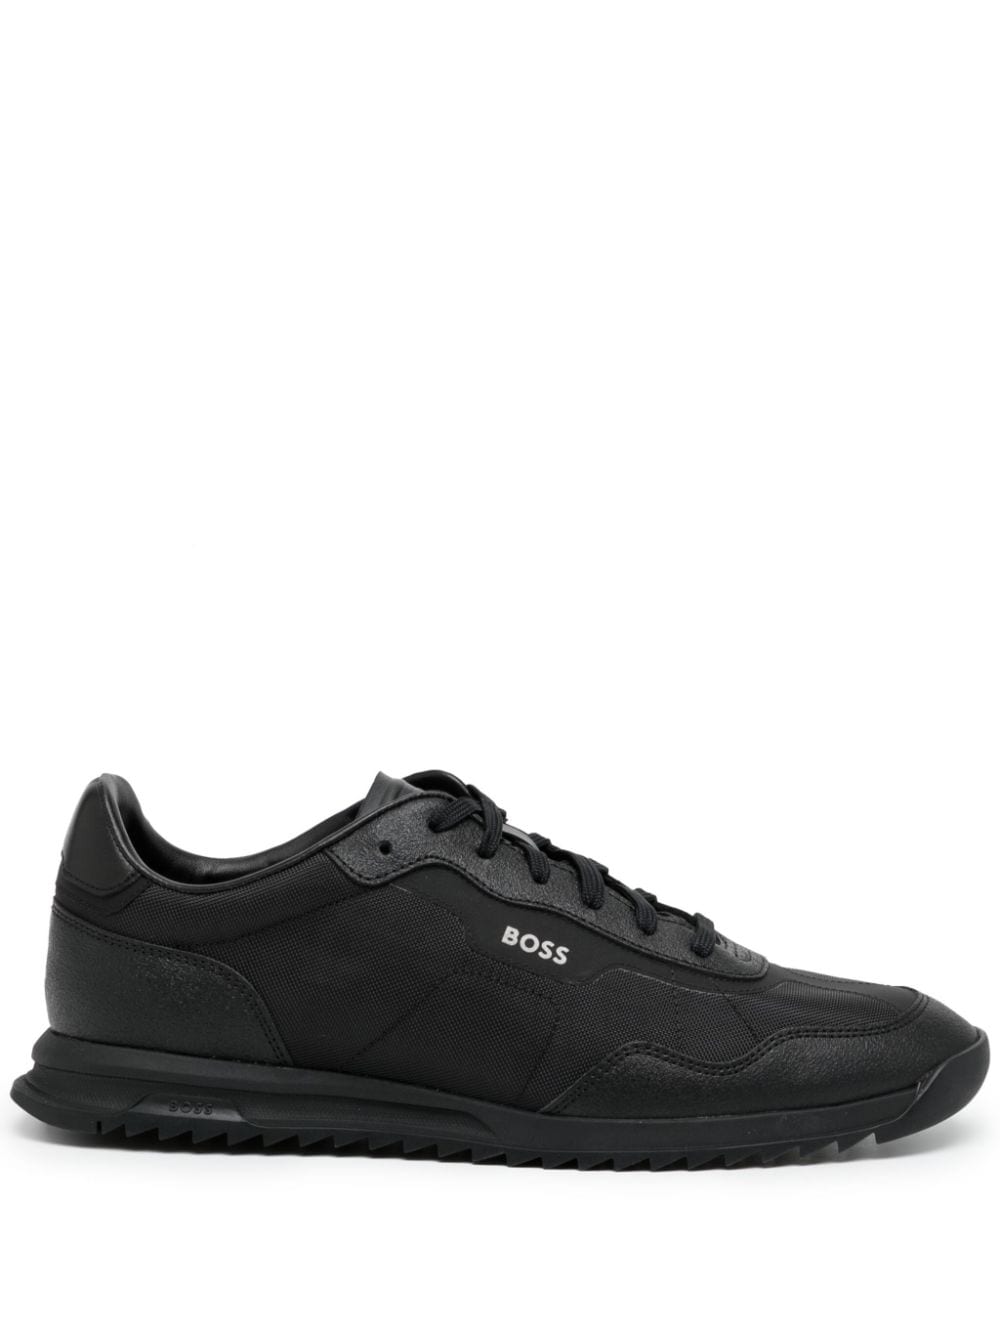 Hugo Boss Tonal Low-top Sneakers In Black